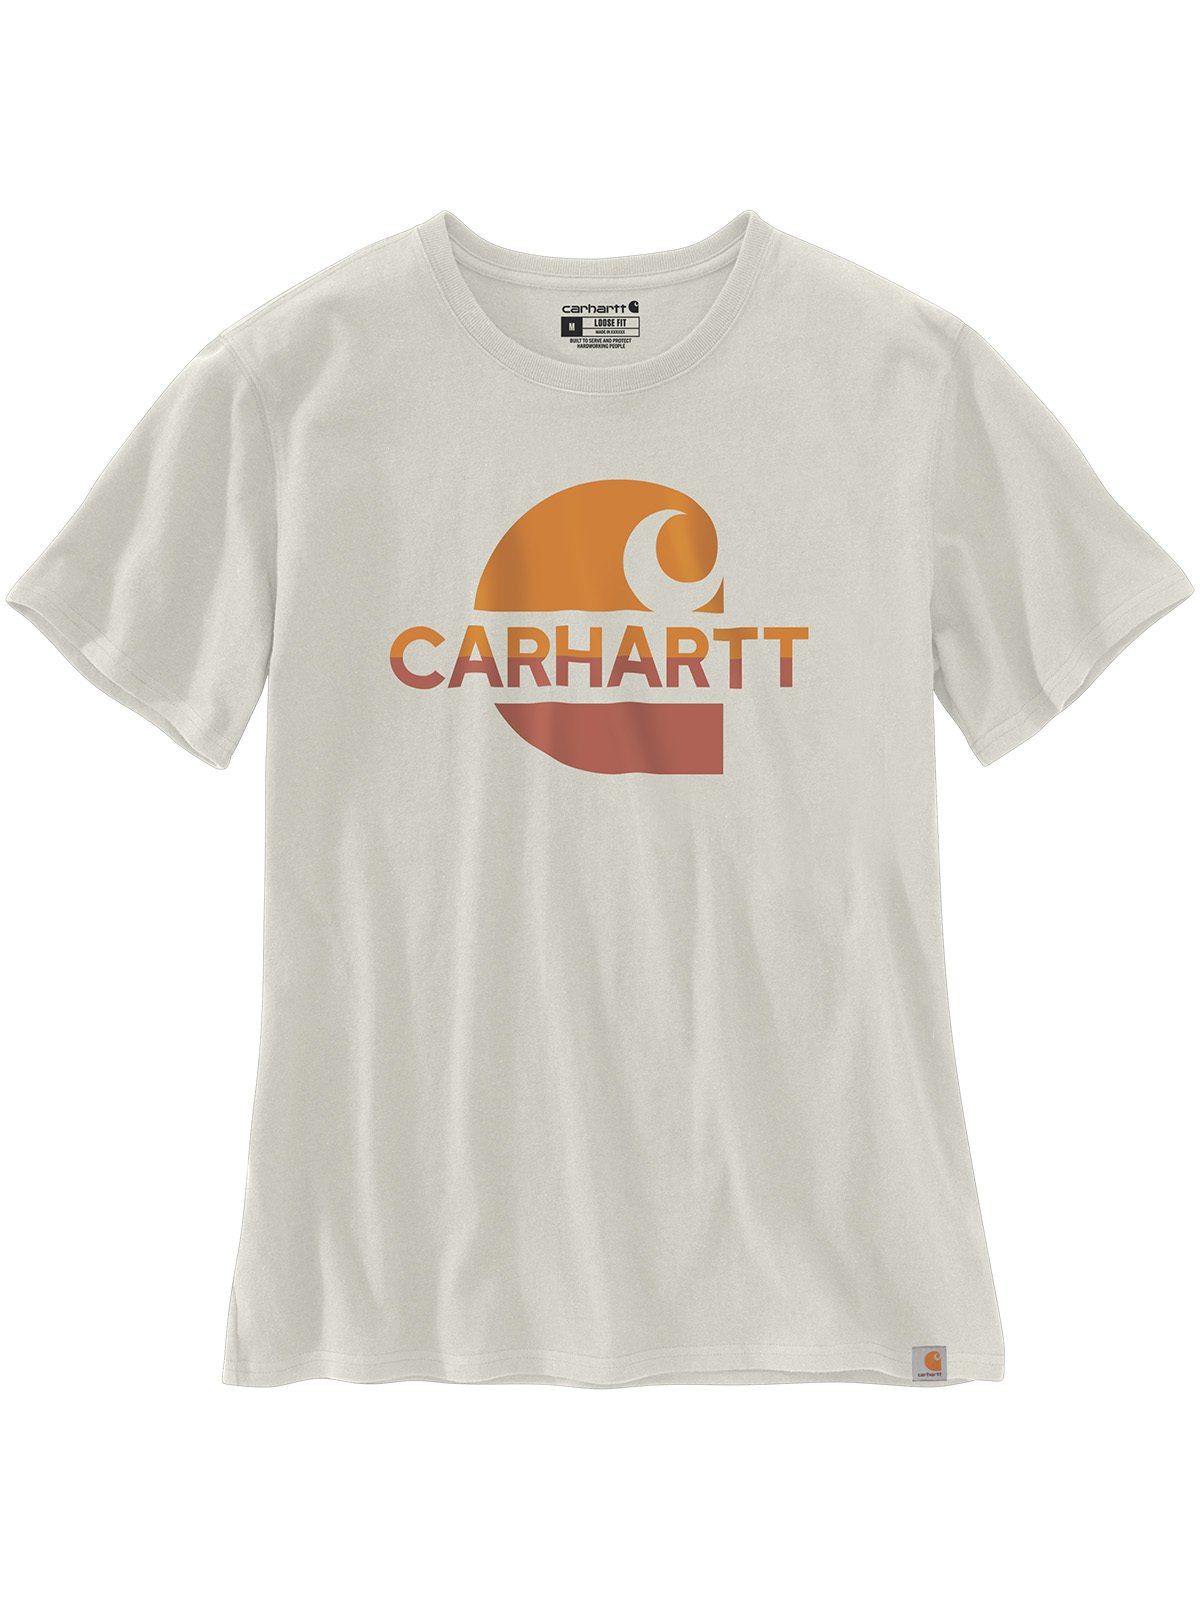 Carhartt Carhartt T-Shirt malt Graphic T-Shirt weiß